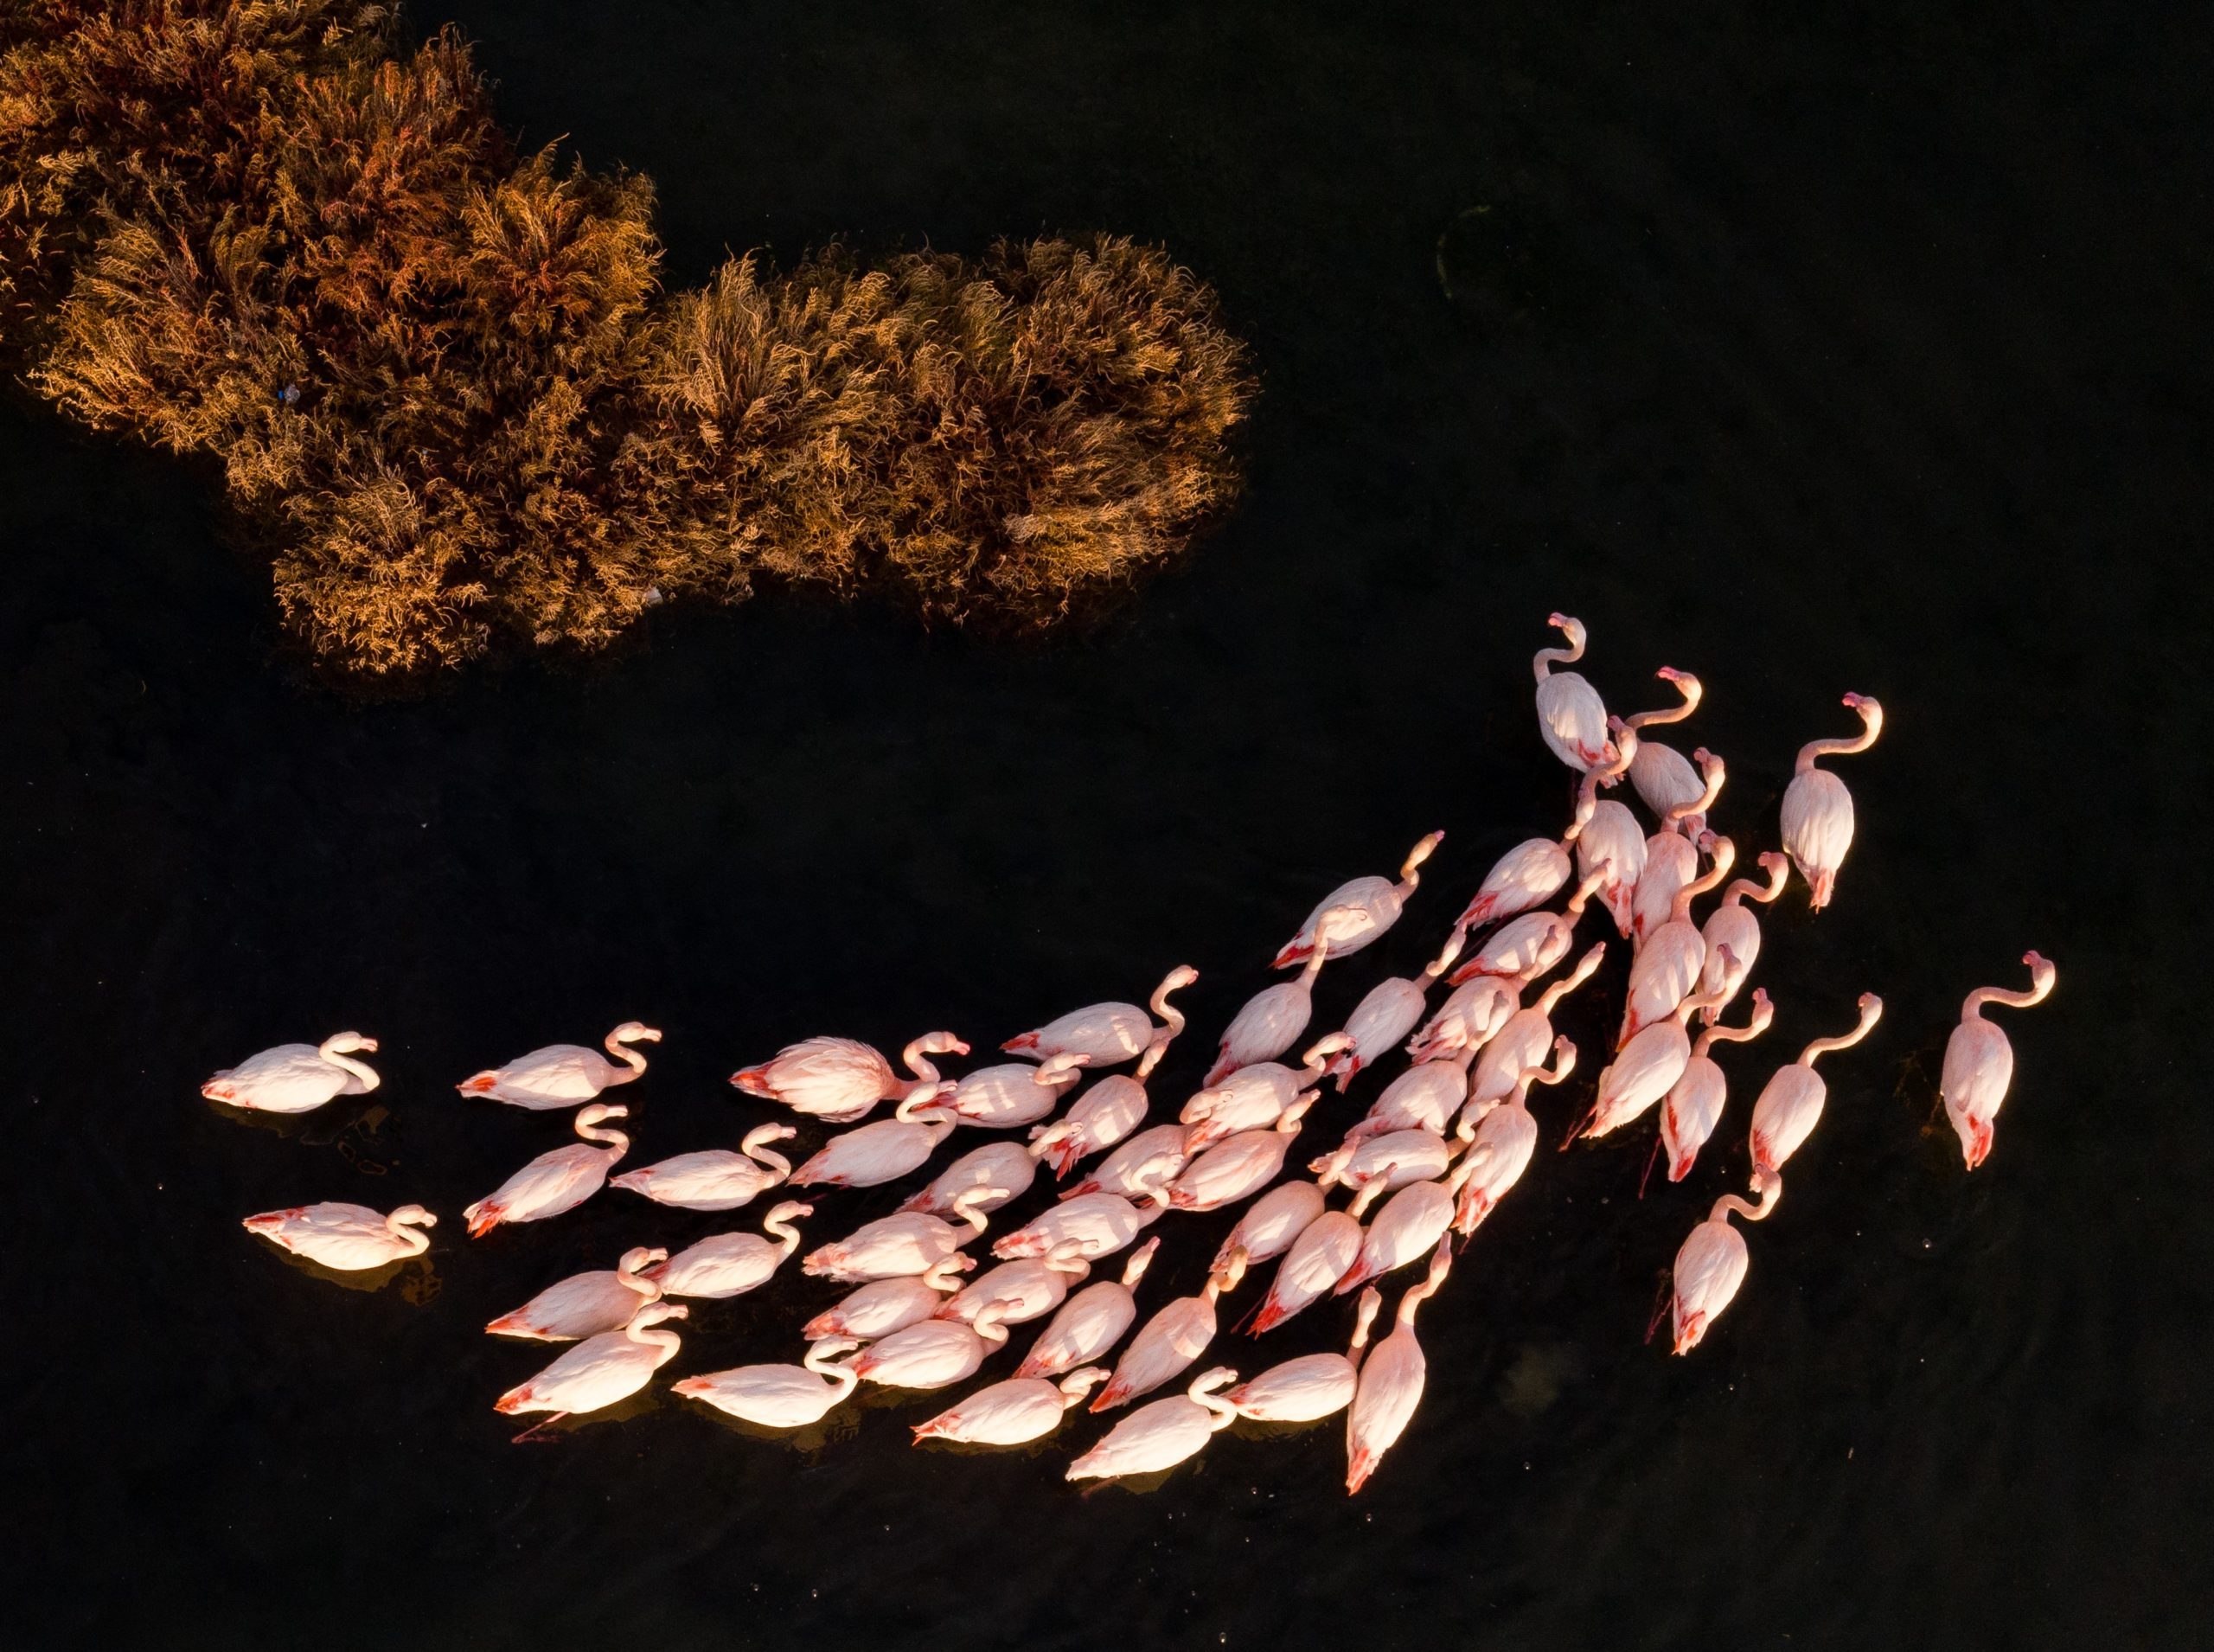 Flamingos in Turkey's Izmir